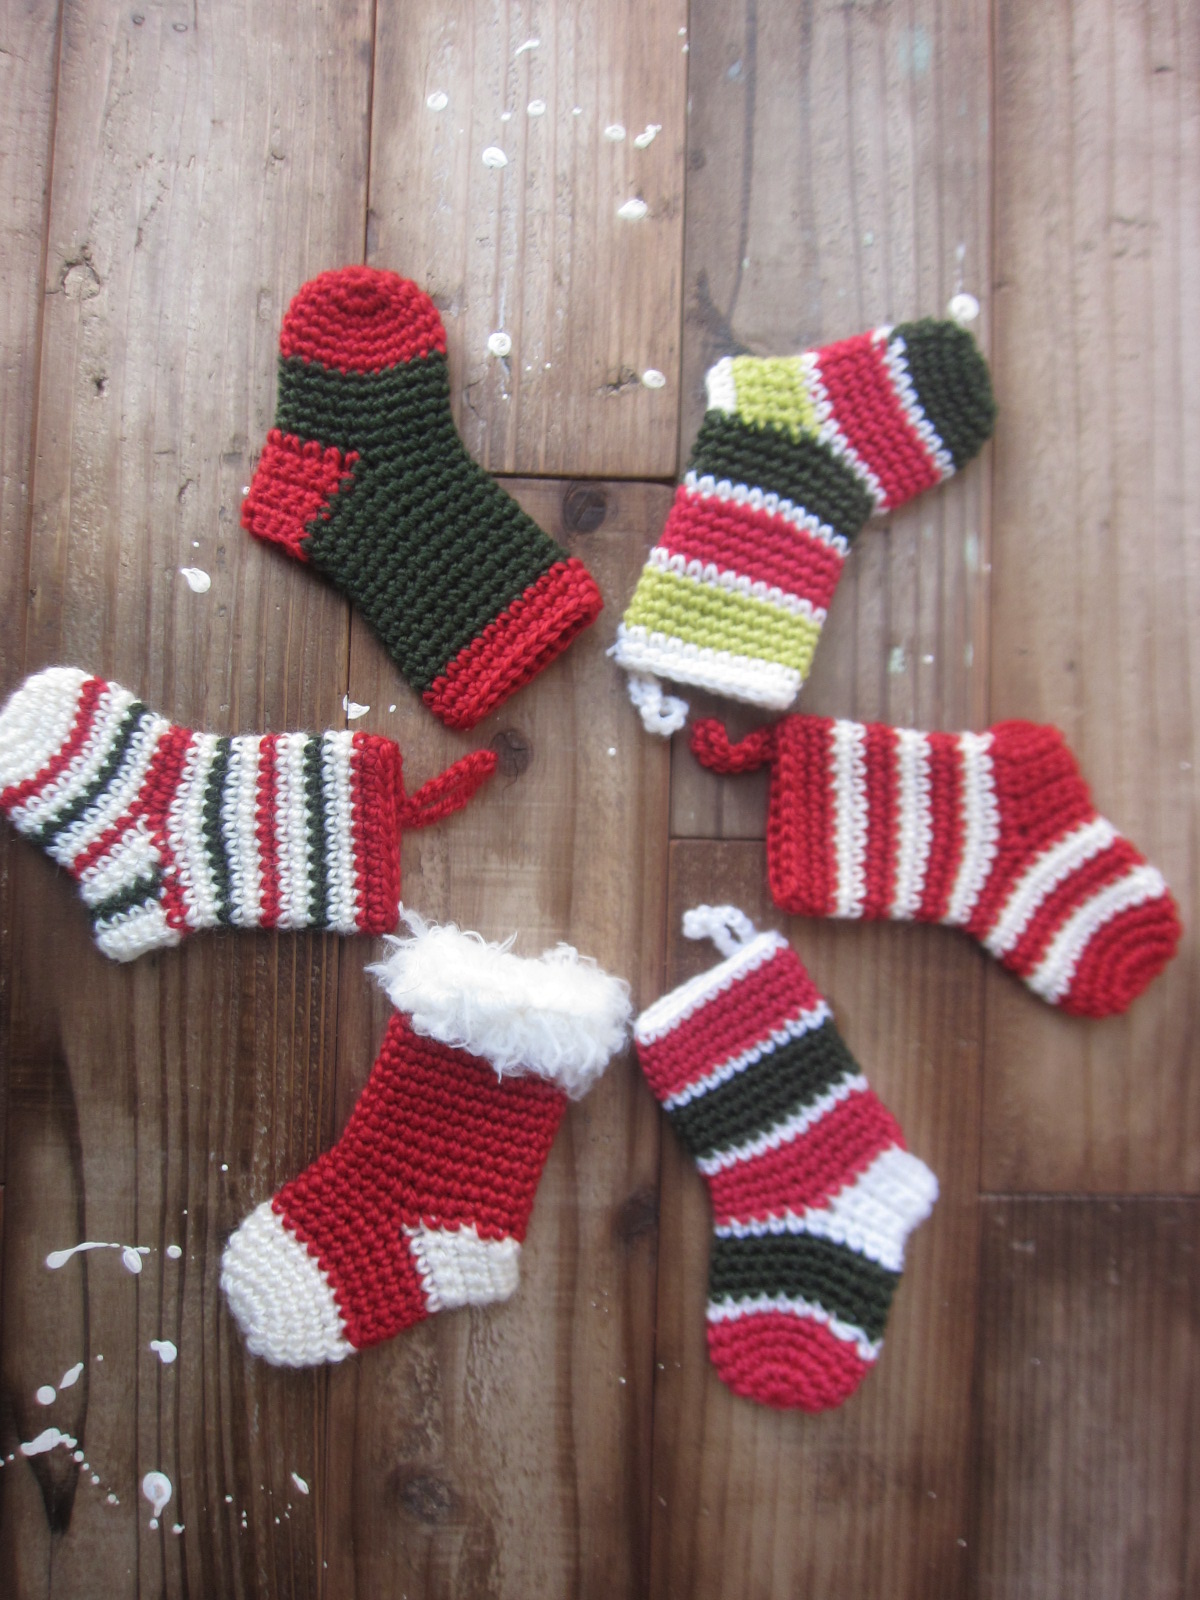 編み図 クリスマスのミニ靴下 Crochet With Ricky